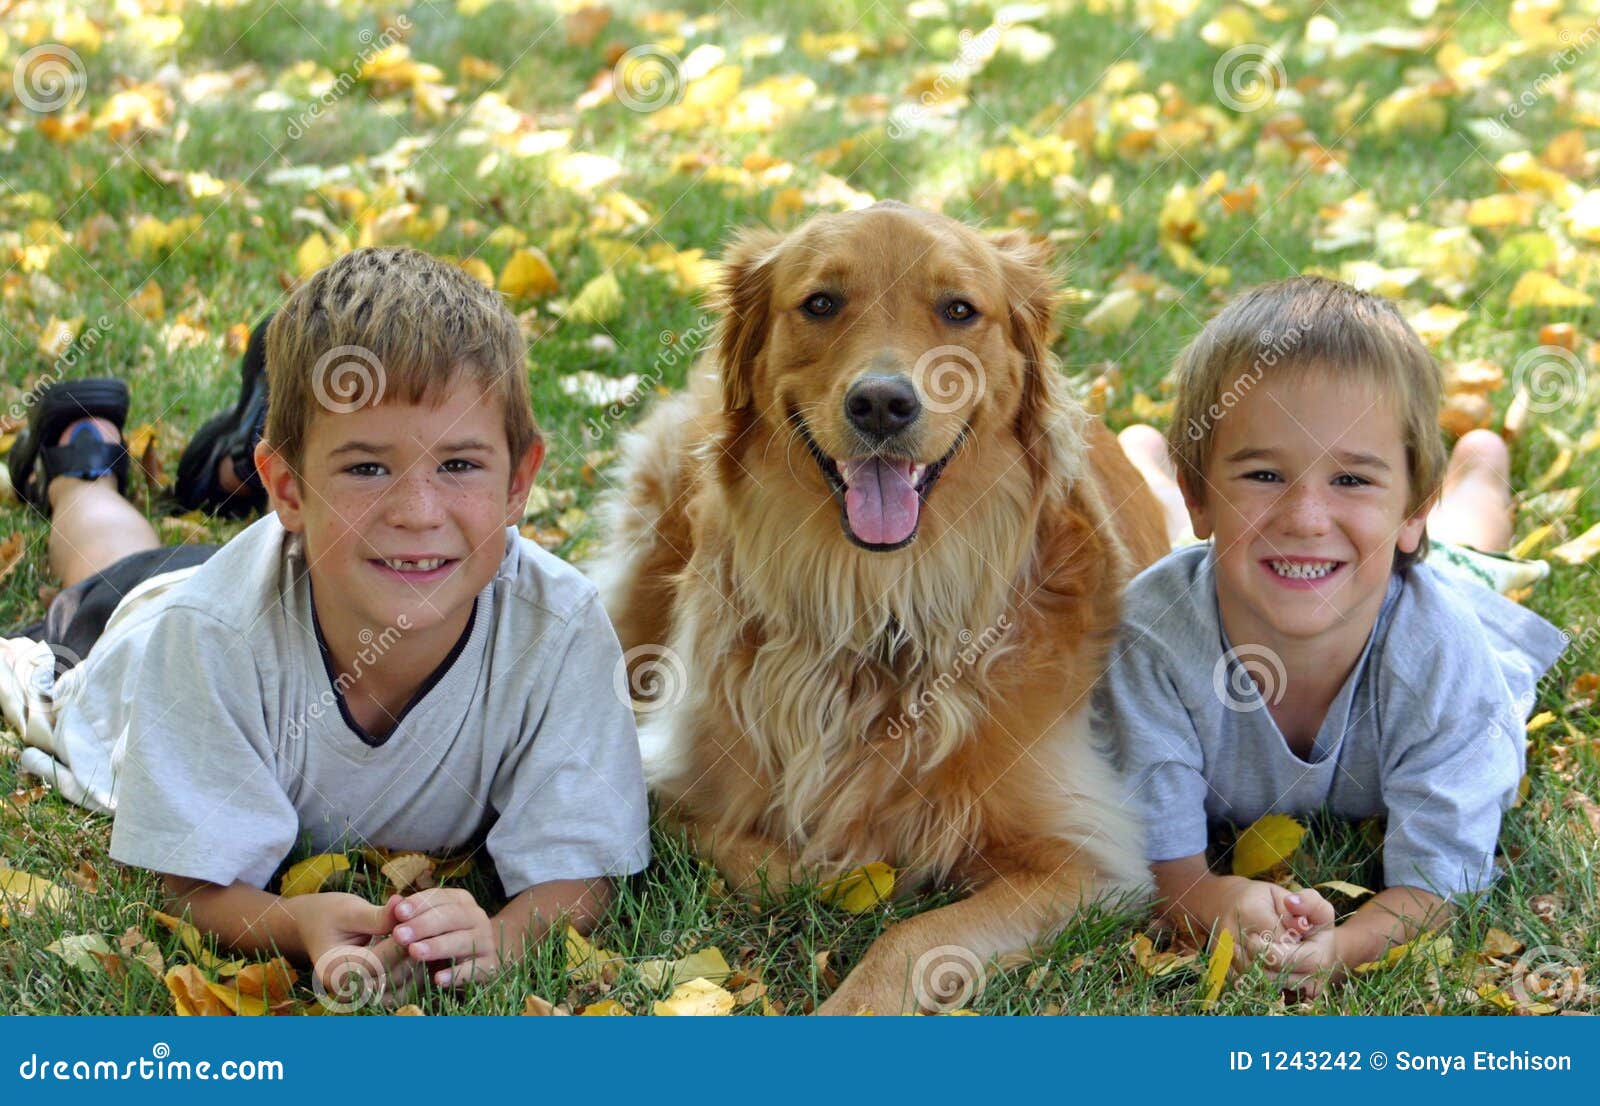 Мальчик и две собаки. Два мальчика и собака. Мальчик с собакой. Два мальчика, девочка и собака. Мальчик играет с собакой.